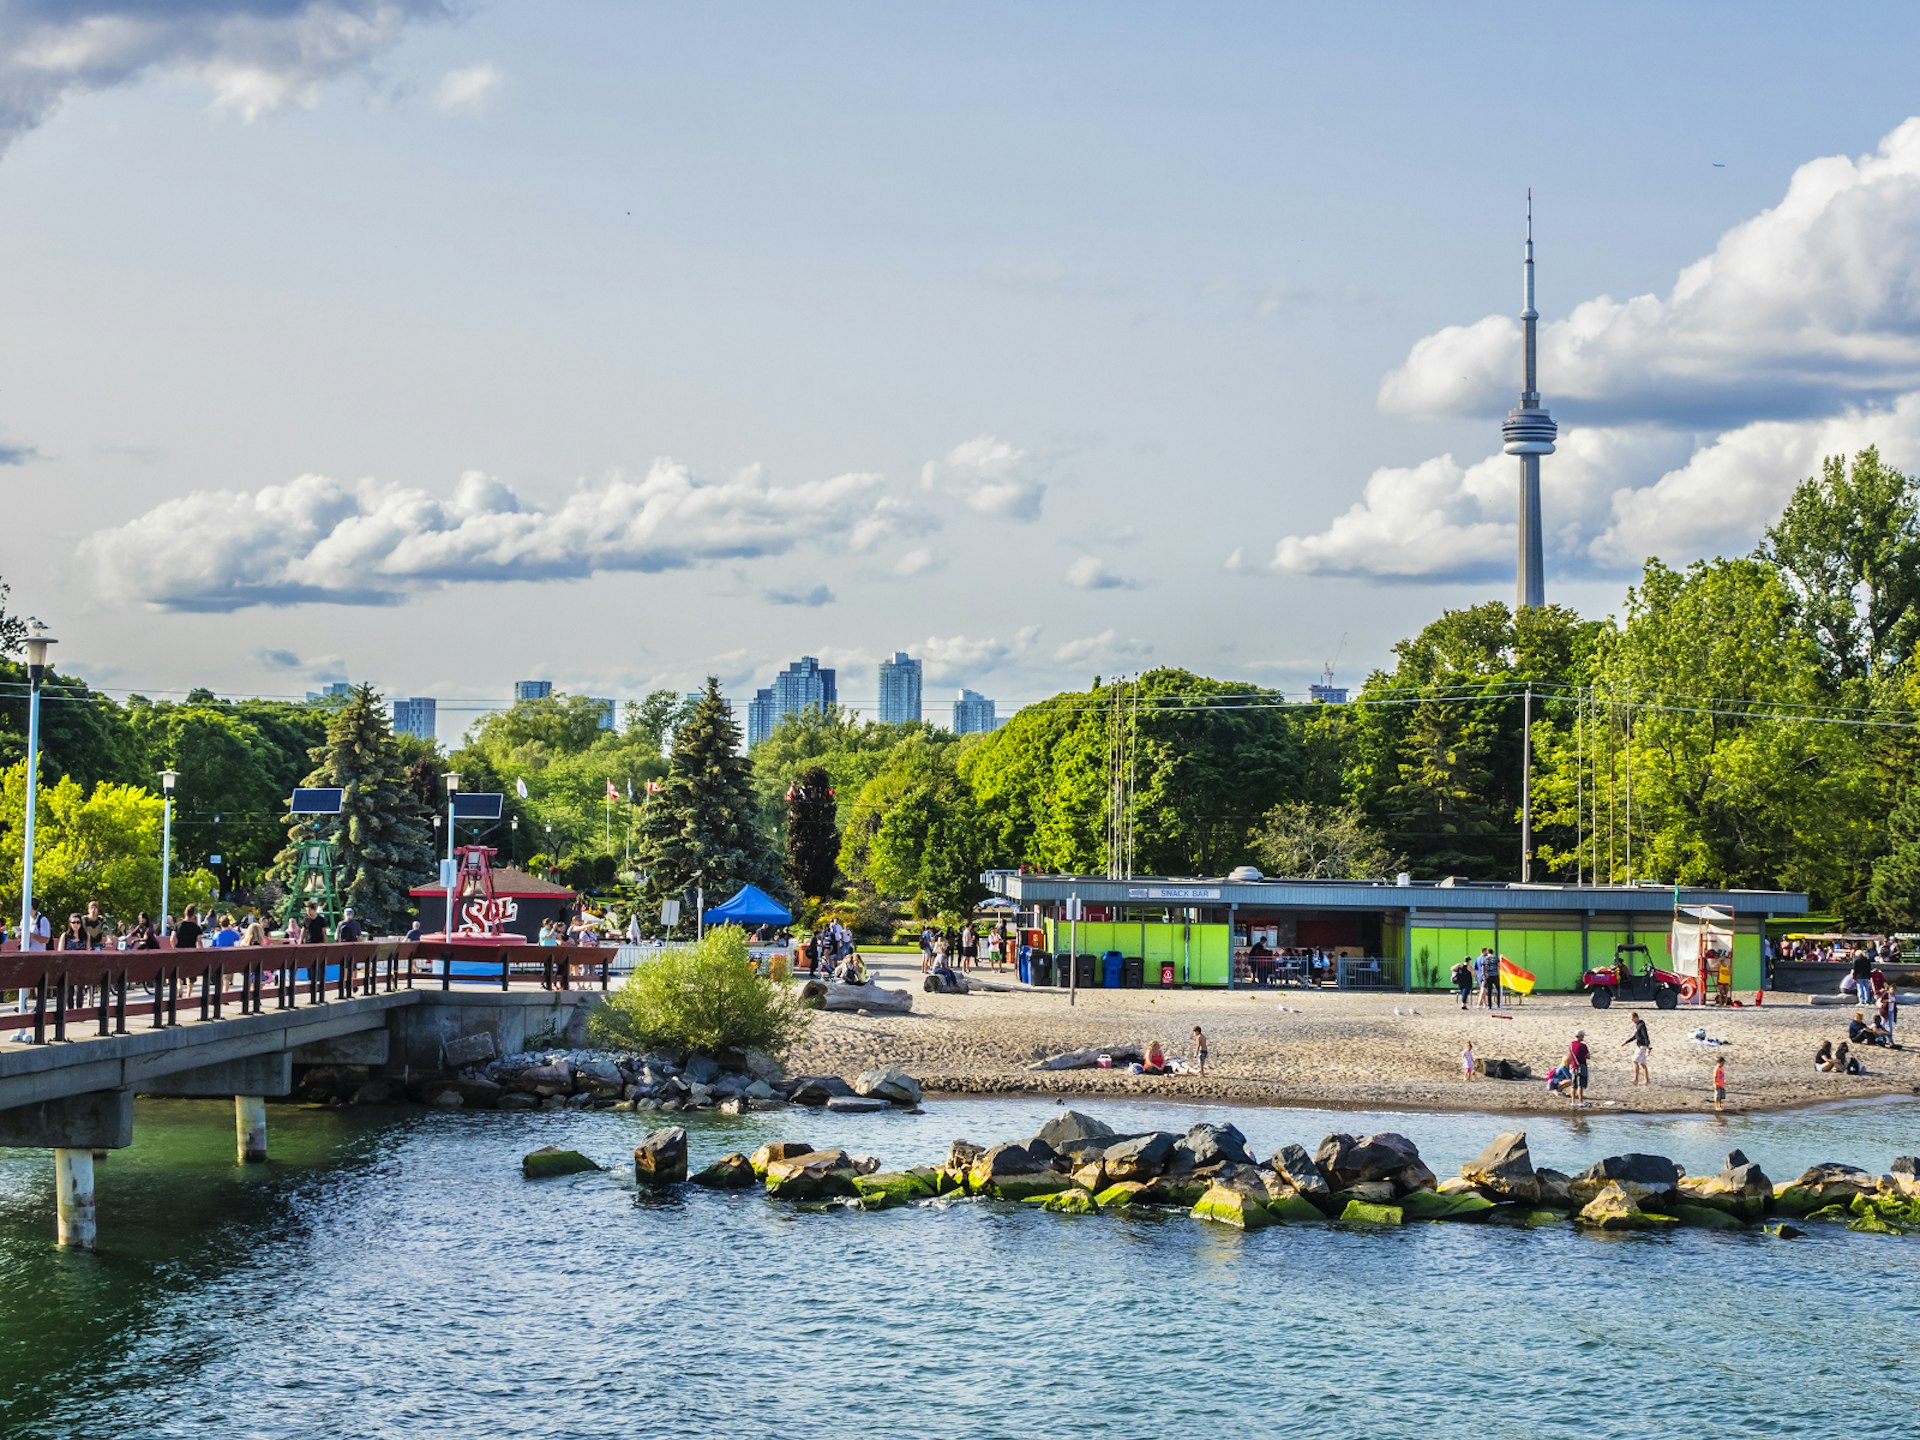 Toronto Islands' Centreville Amusement Park